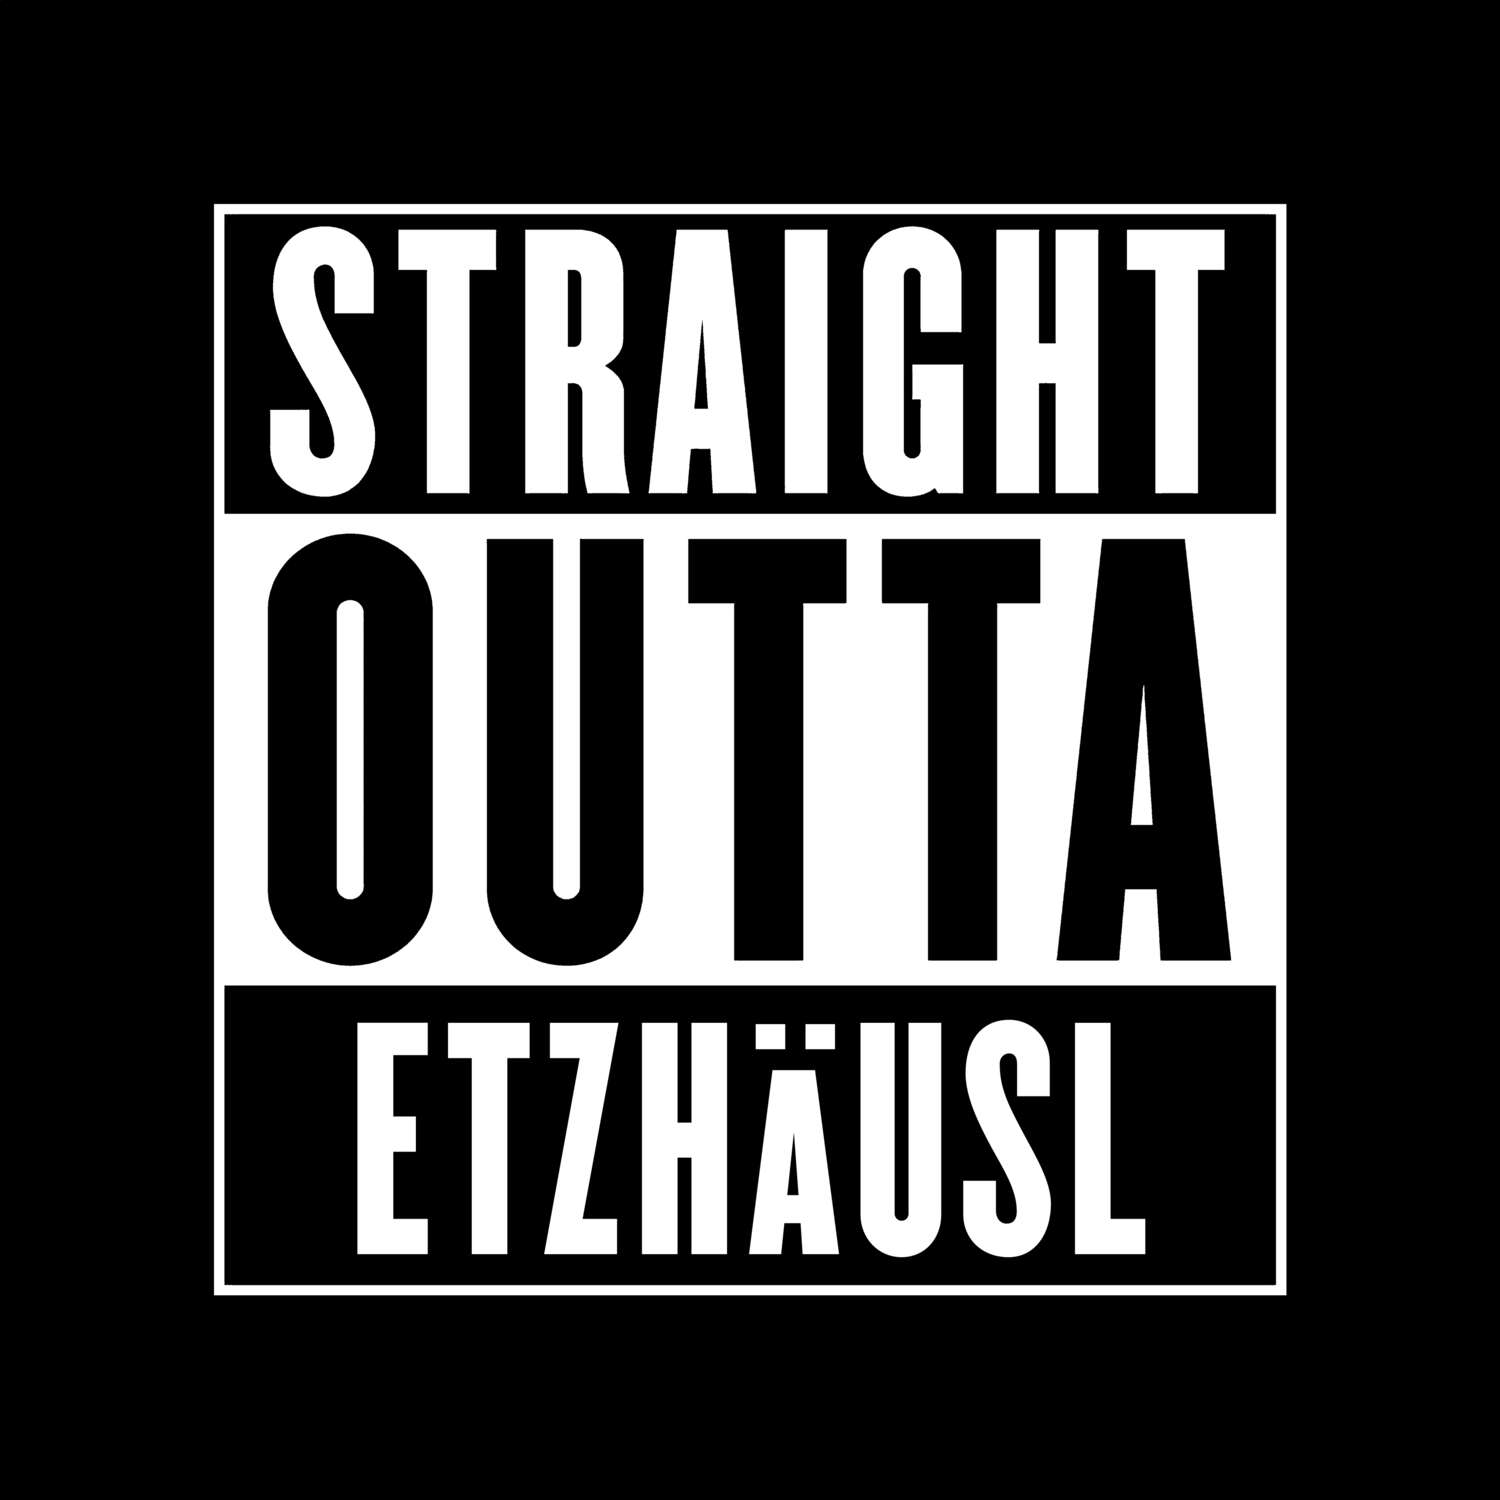 Etzhäusl T-Shirt »Straight Outta«